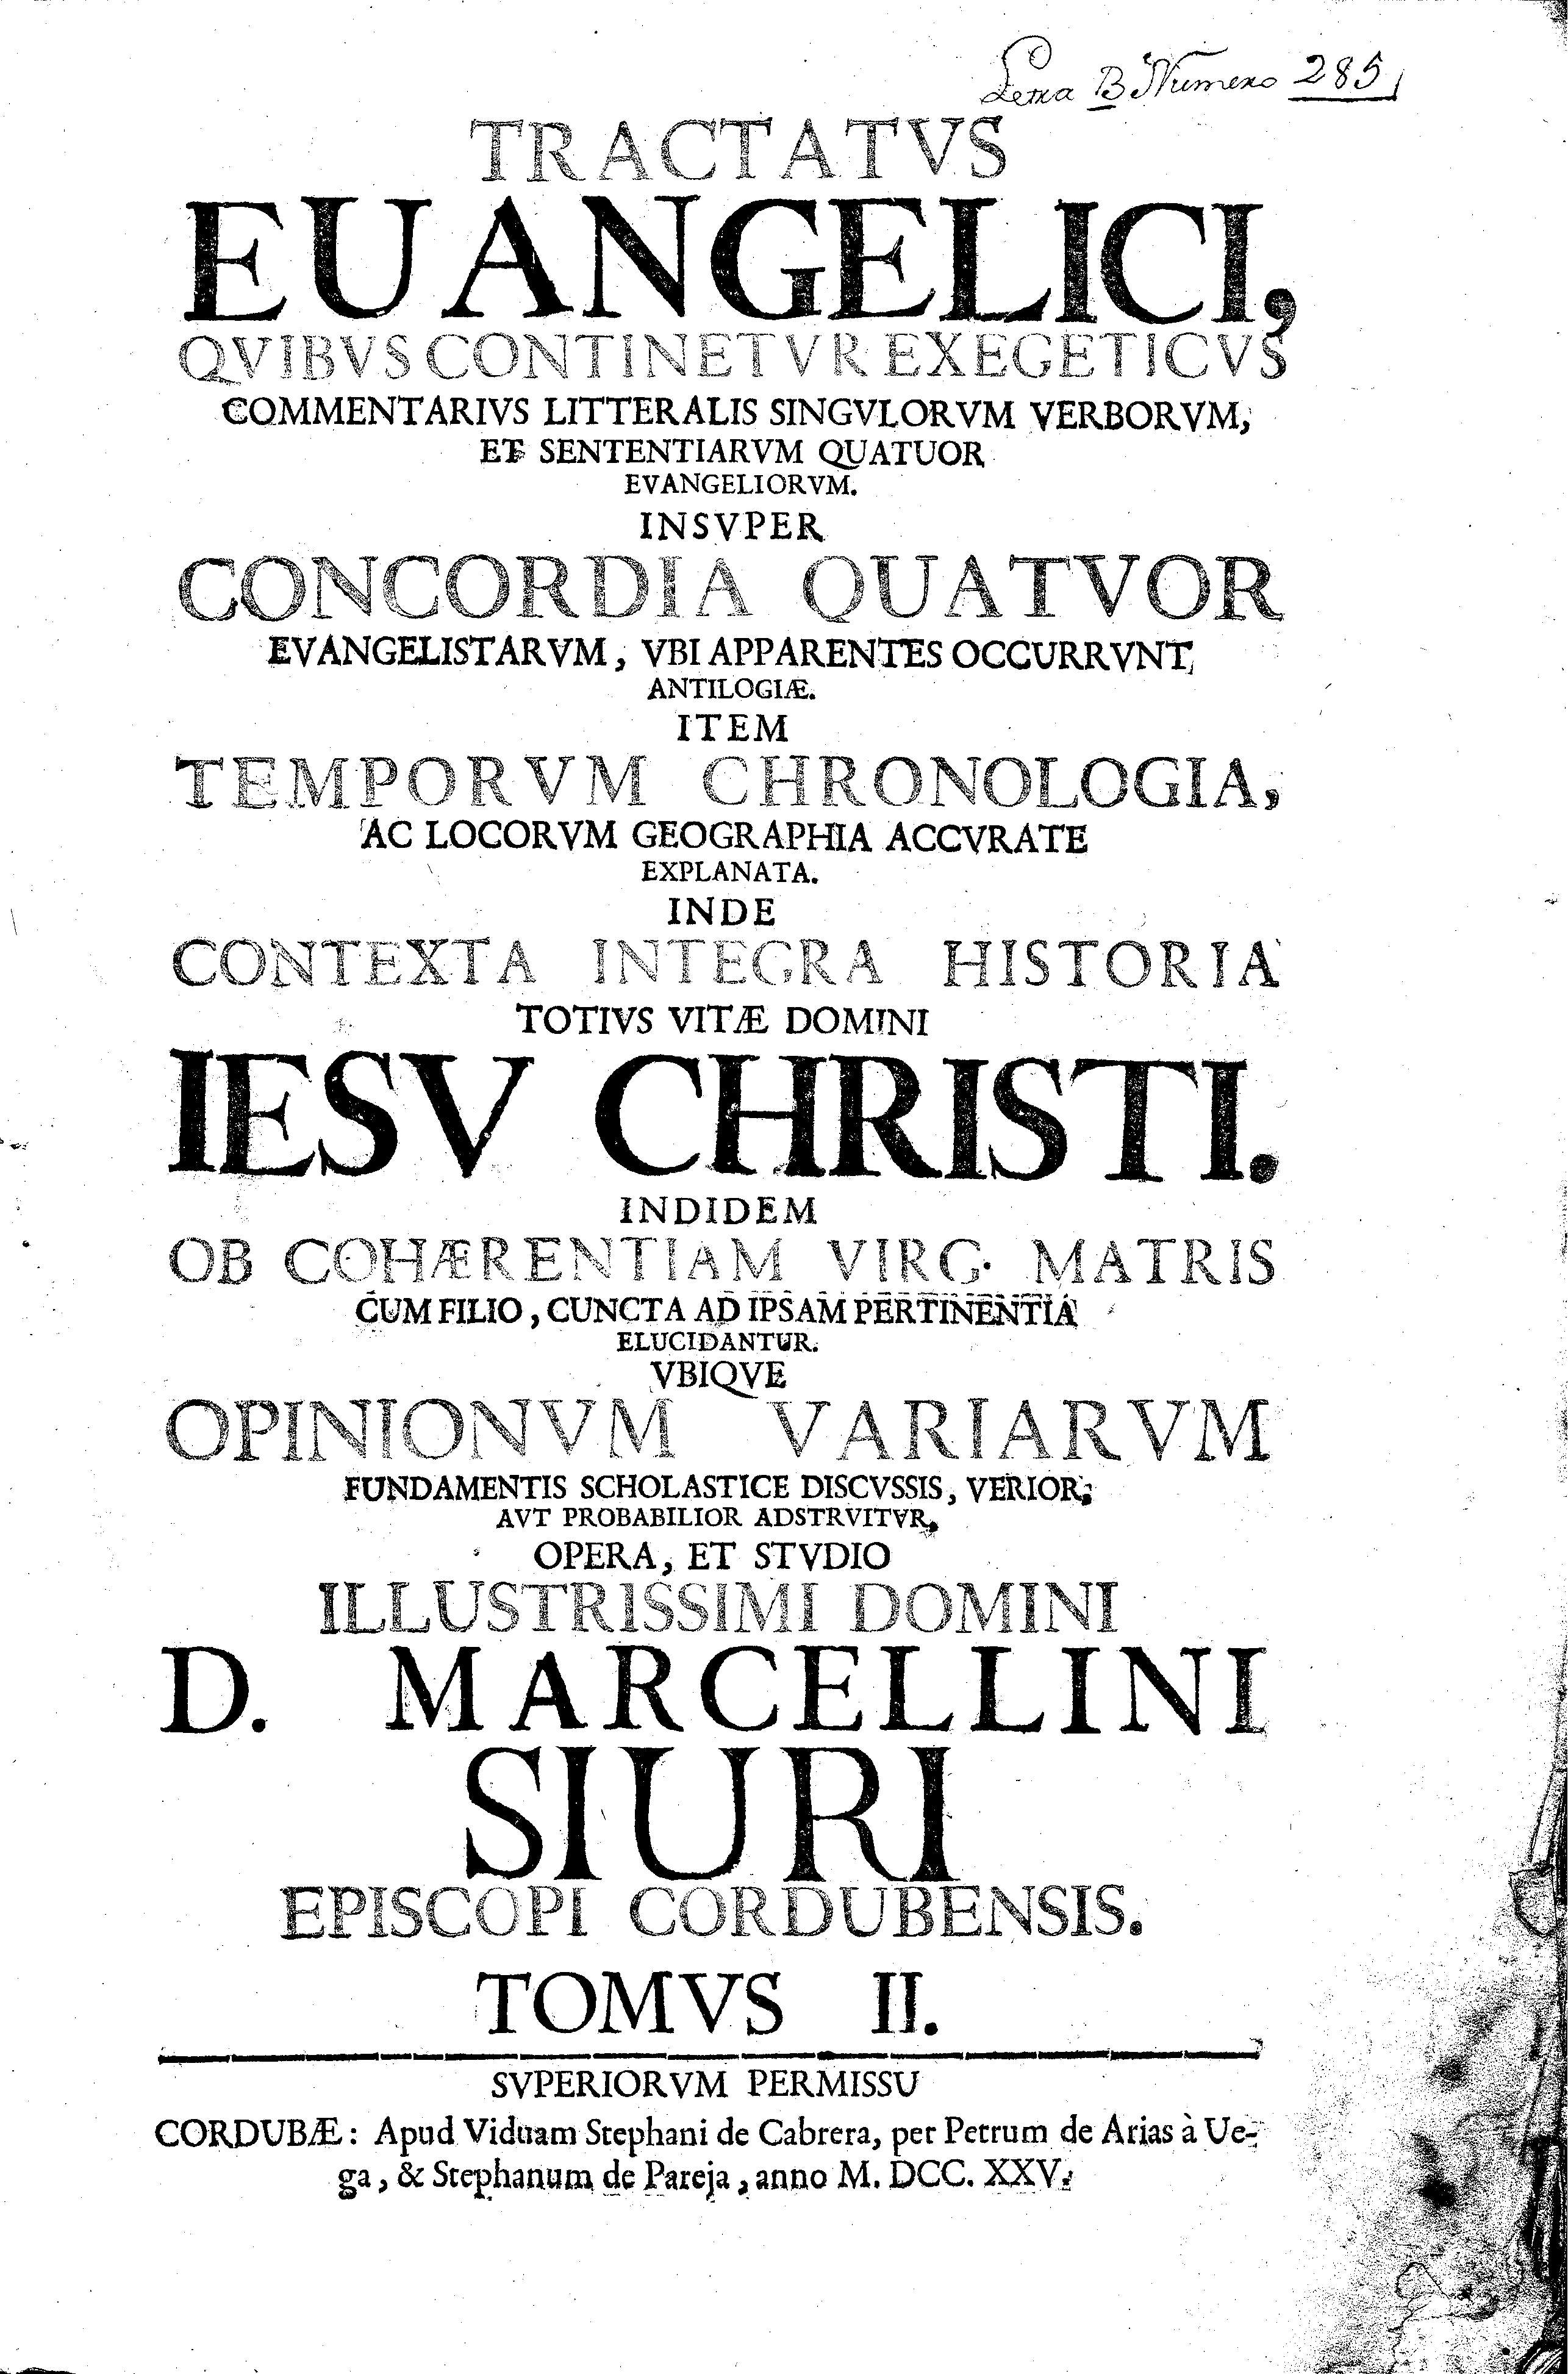 Tractatus euangelici quibus continetur exegeticus commentarius litteralis singulorum verborum, et sententiarum quatuor euangeliorum... Tomvs II